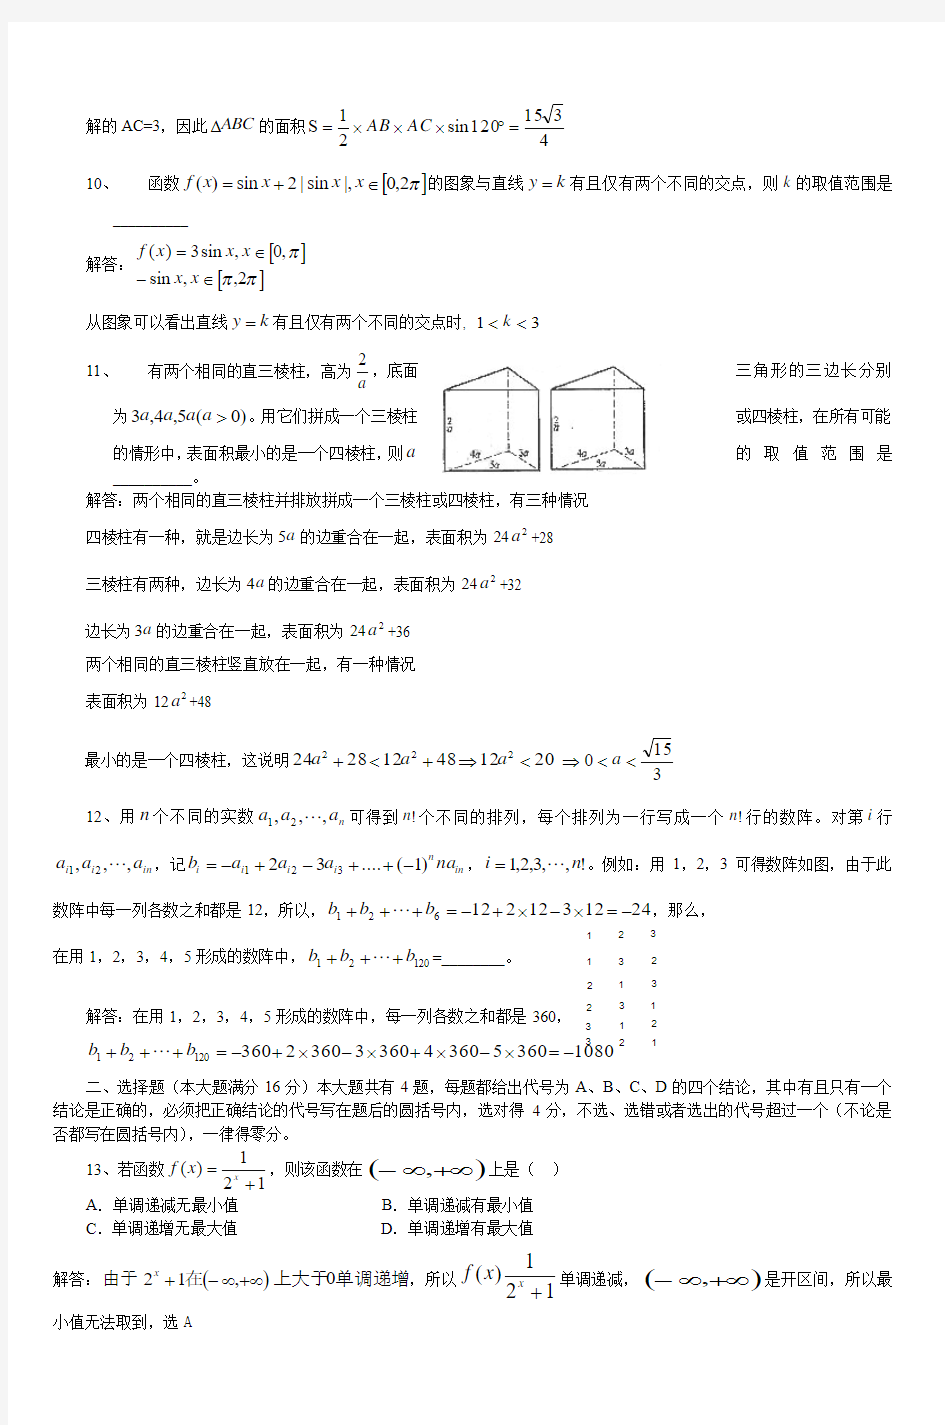 2005年上海高考数学试卷(理工农医类)详细